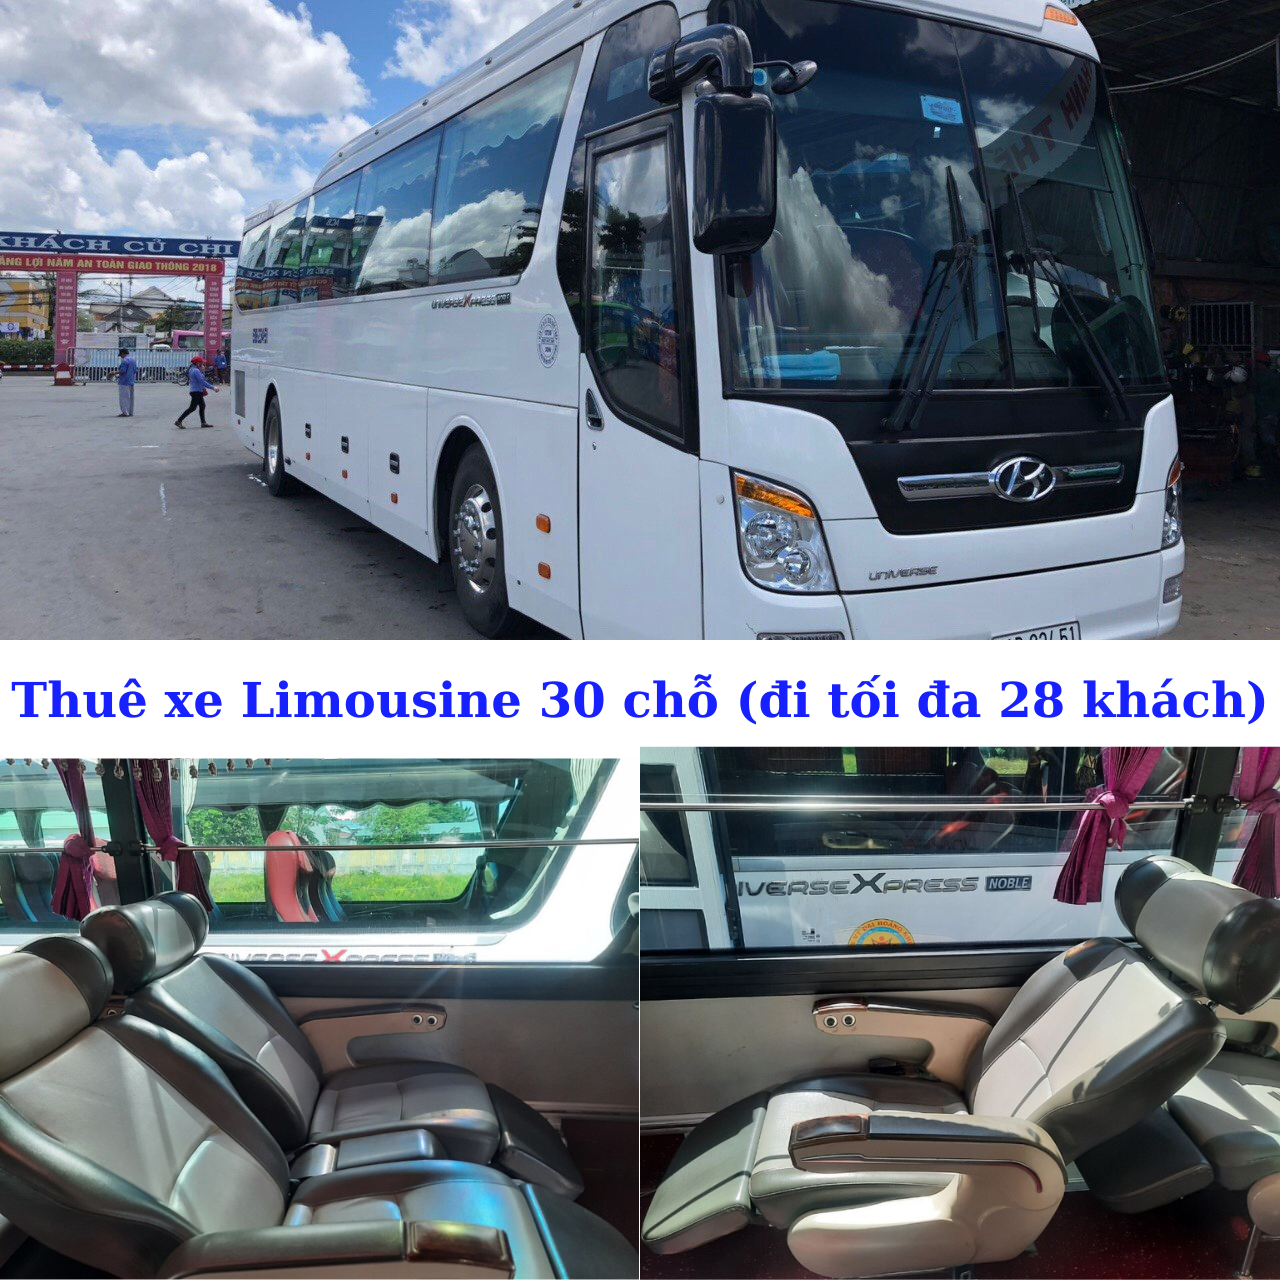 Thuê xe Limousine 30 chỗ (đi tối đa 28 khách) (2).png (2.20 MB)